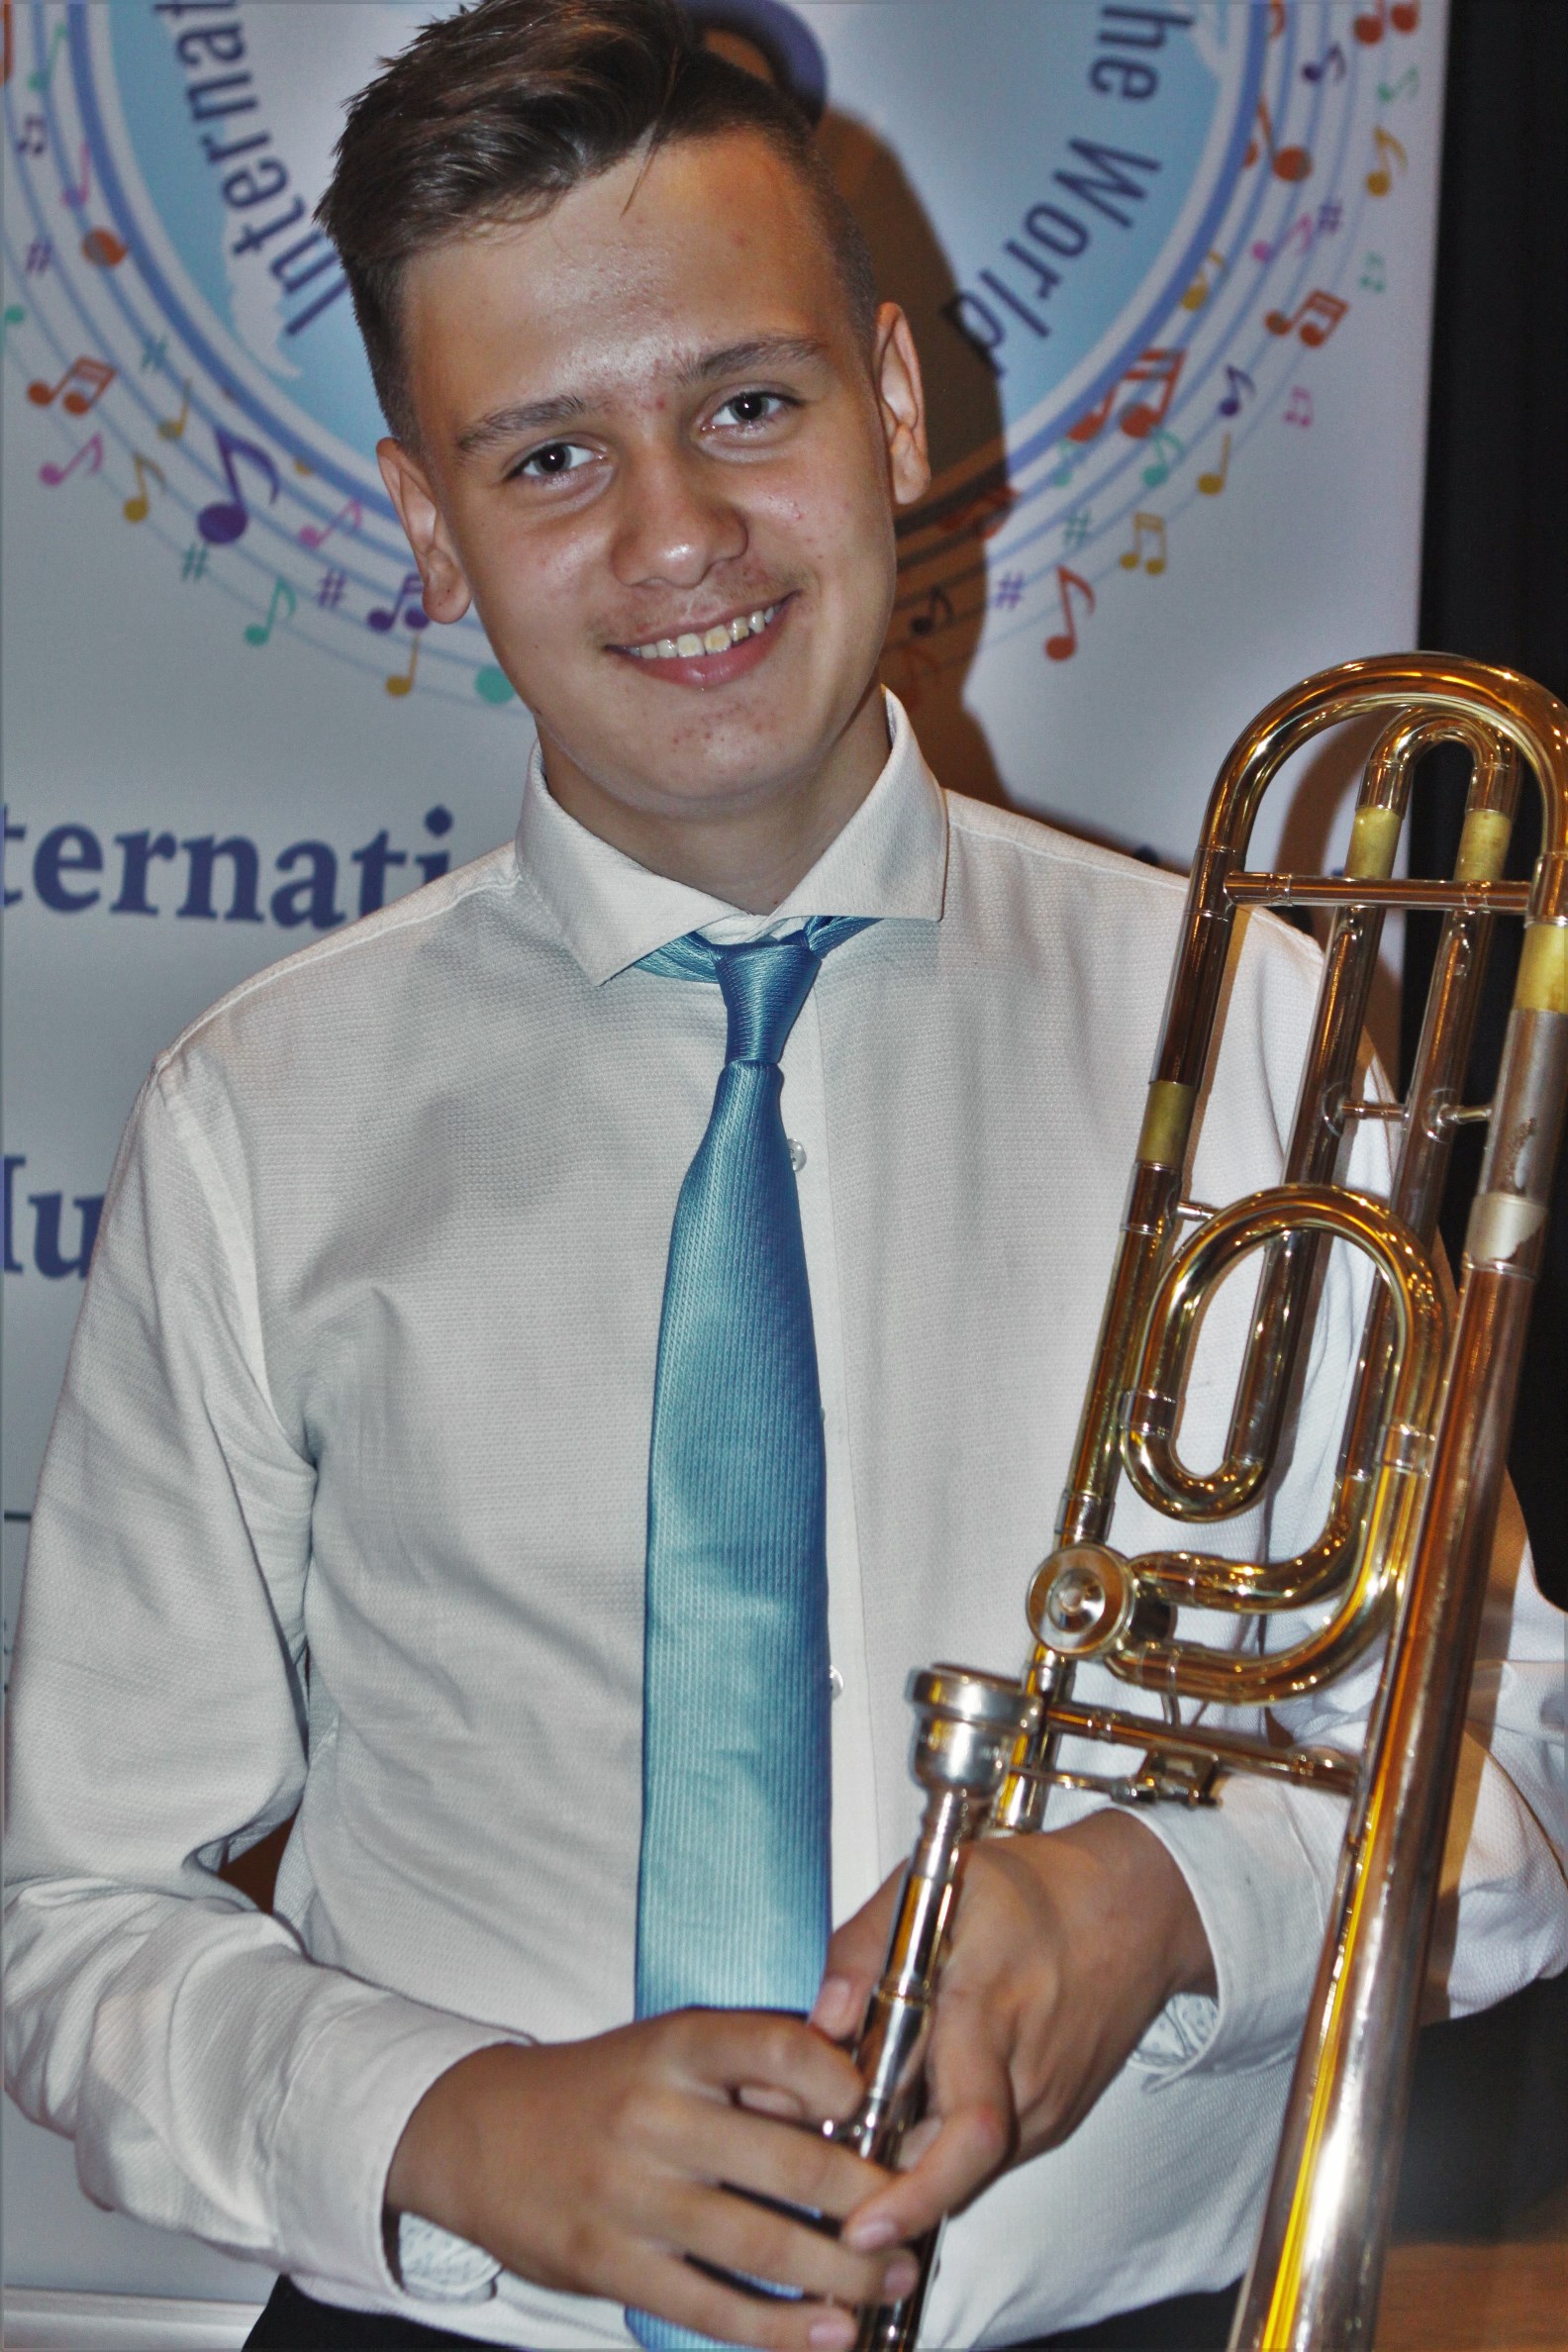 מילן ליחוקון, תלמיד מרכז המוסיקה העירוני זכה במקום הראשון בתחרות מוסיקה ארצית לנגנים צעירים